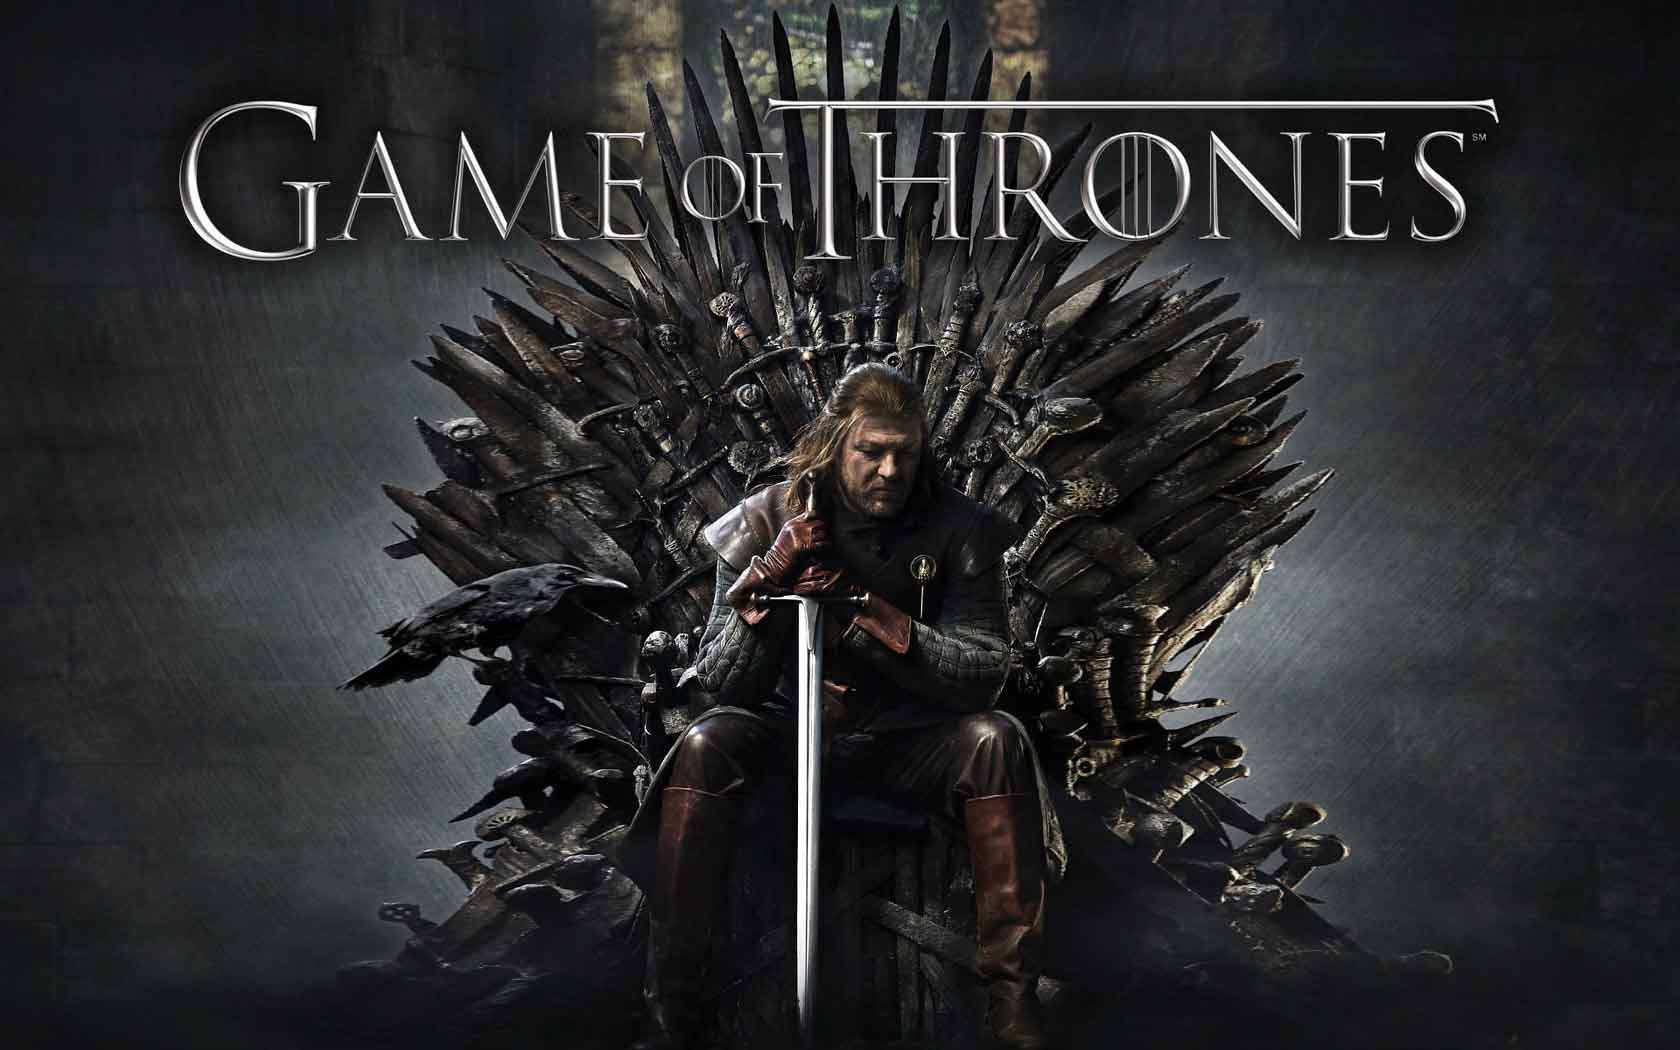 Vis dine allierede respekt: Ned Stark fra Game of Thrones. Wallpaper